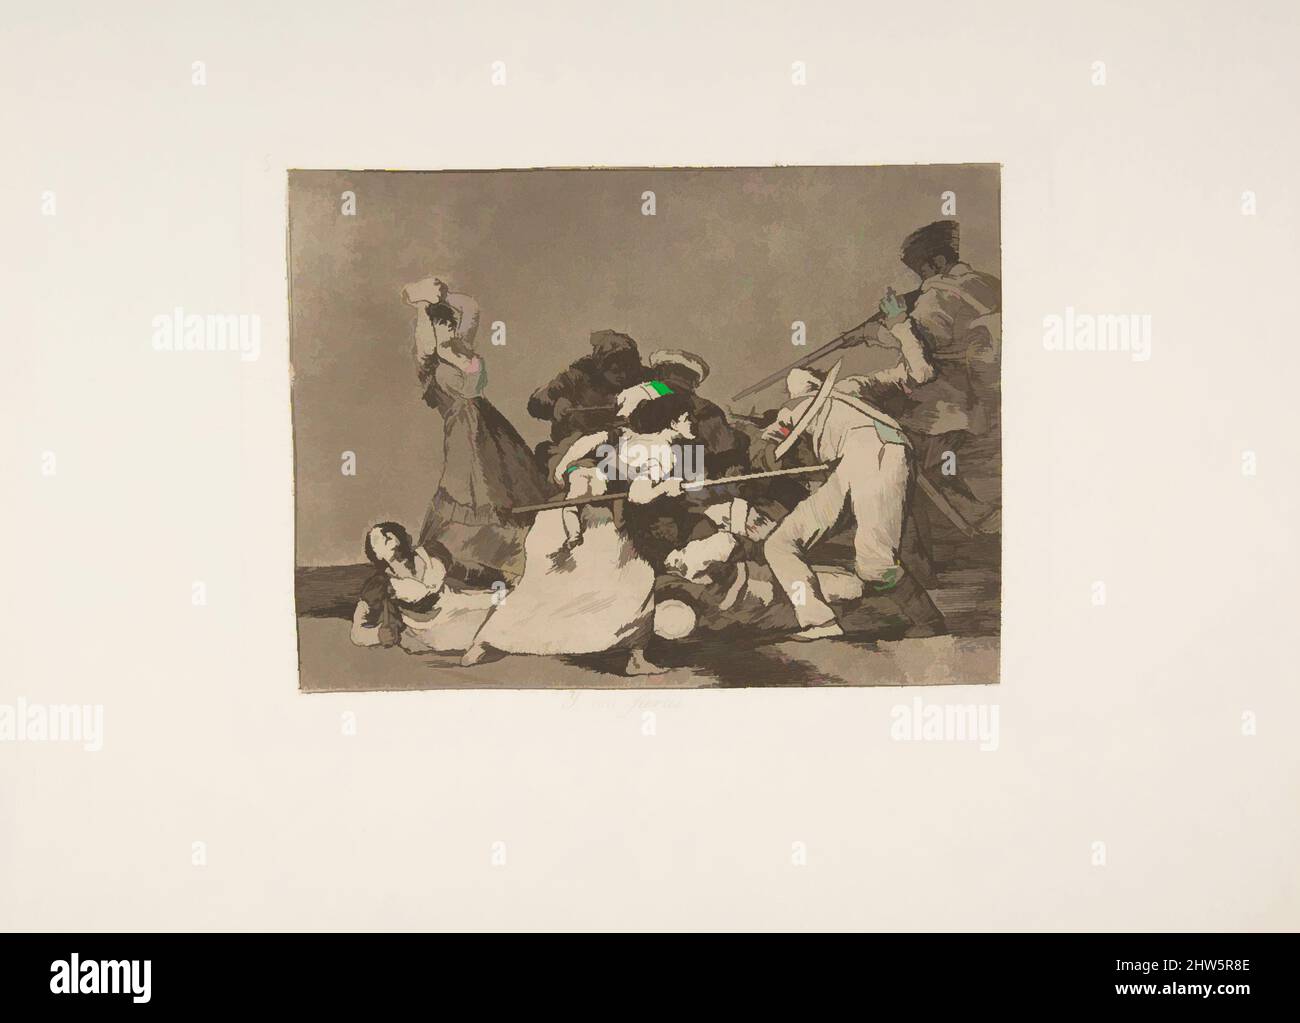 Art inspiré par la planche 5 de 'les désastres de la guerre' (Los Desastres de la Guerra): Et ils sont comme des bêtes sauvages (y son fieras), 1810 ( publié en 1863), Etching, l'aquatint bruni et le point sec, plaque: 6 in. × 8 1/8 po (15,2 × 20,7 cm), Prints, Goya (Francisco de Goya y Lucientes) (, oeuvres classiques modernisées par Artotop avec un peu de modernité. Formes, couleur et valeur, impact visuel accrocheur sur l'art émotions par la liberté d'œuvres d'art d'une manière contemporaine. Un message intemporel qui cherche une nouvelle direction créative. Artistes qui se tournent vers le support numérique et créent le NFT Artotop Banque D'Images